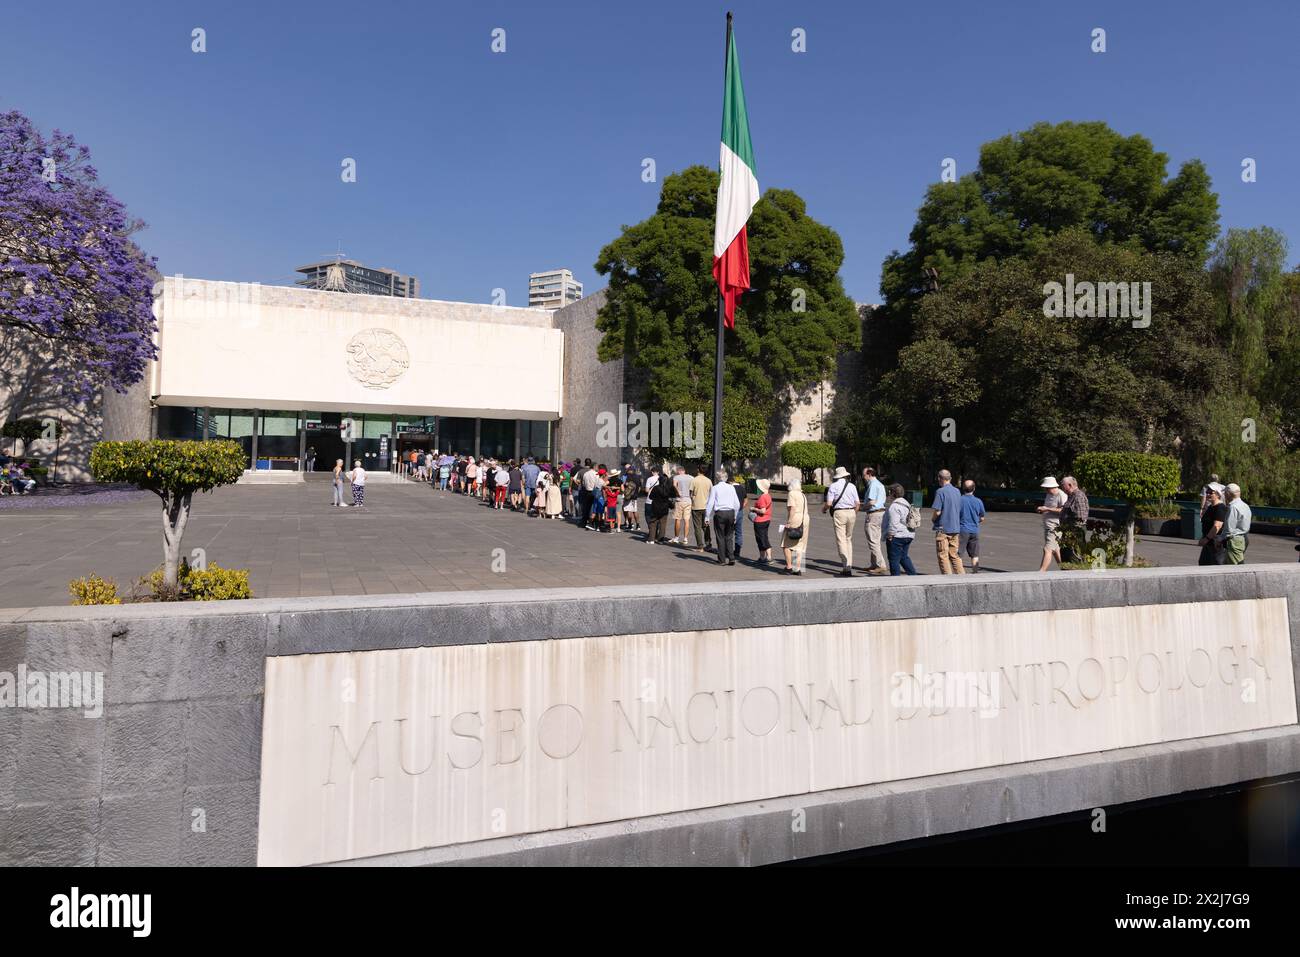 Museo Nazionale di Antropologia, città del Messico; - Vista esterna dell'ingresso che mostra folle di turisti in coda per entrare. Messico. Foto Stock